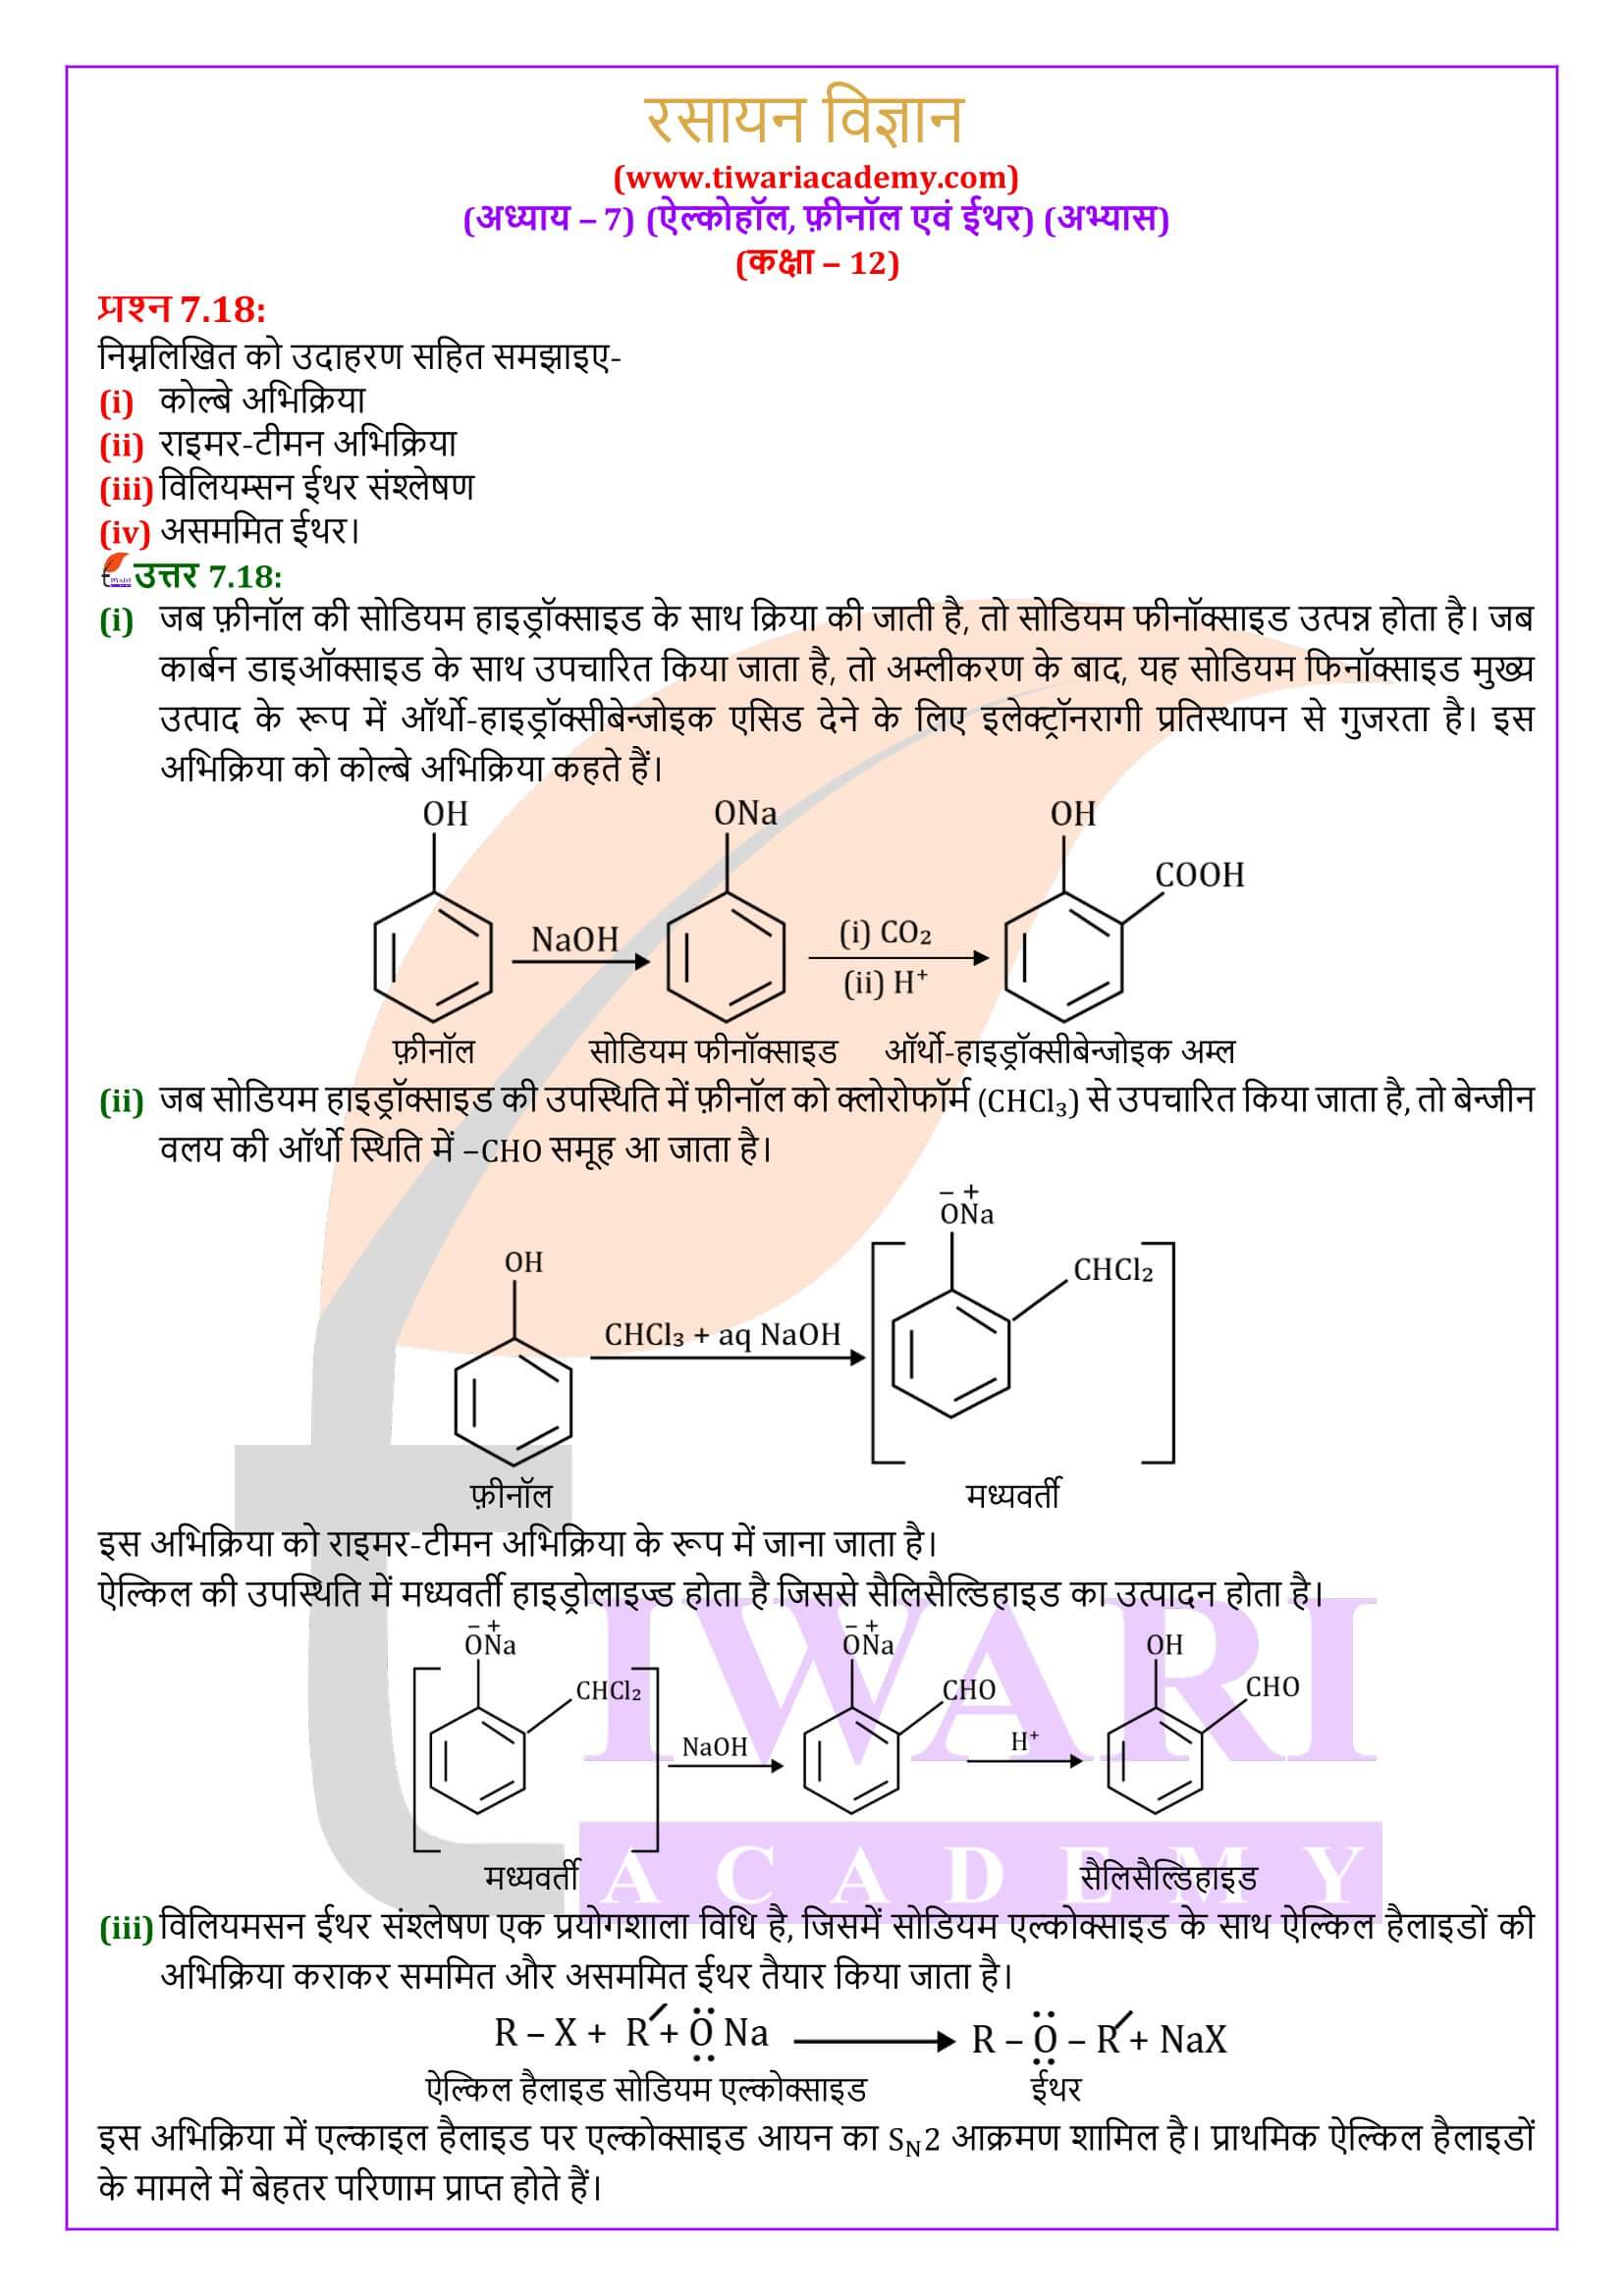 कक्षा 12 रसायन विज्ञान अध्याय 7 के हल हिंदी में